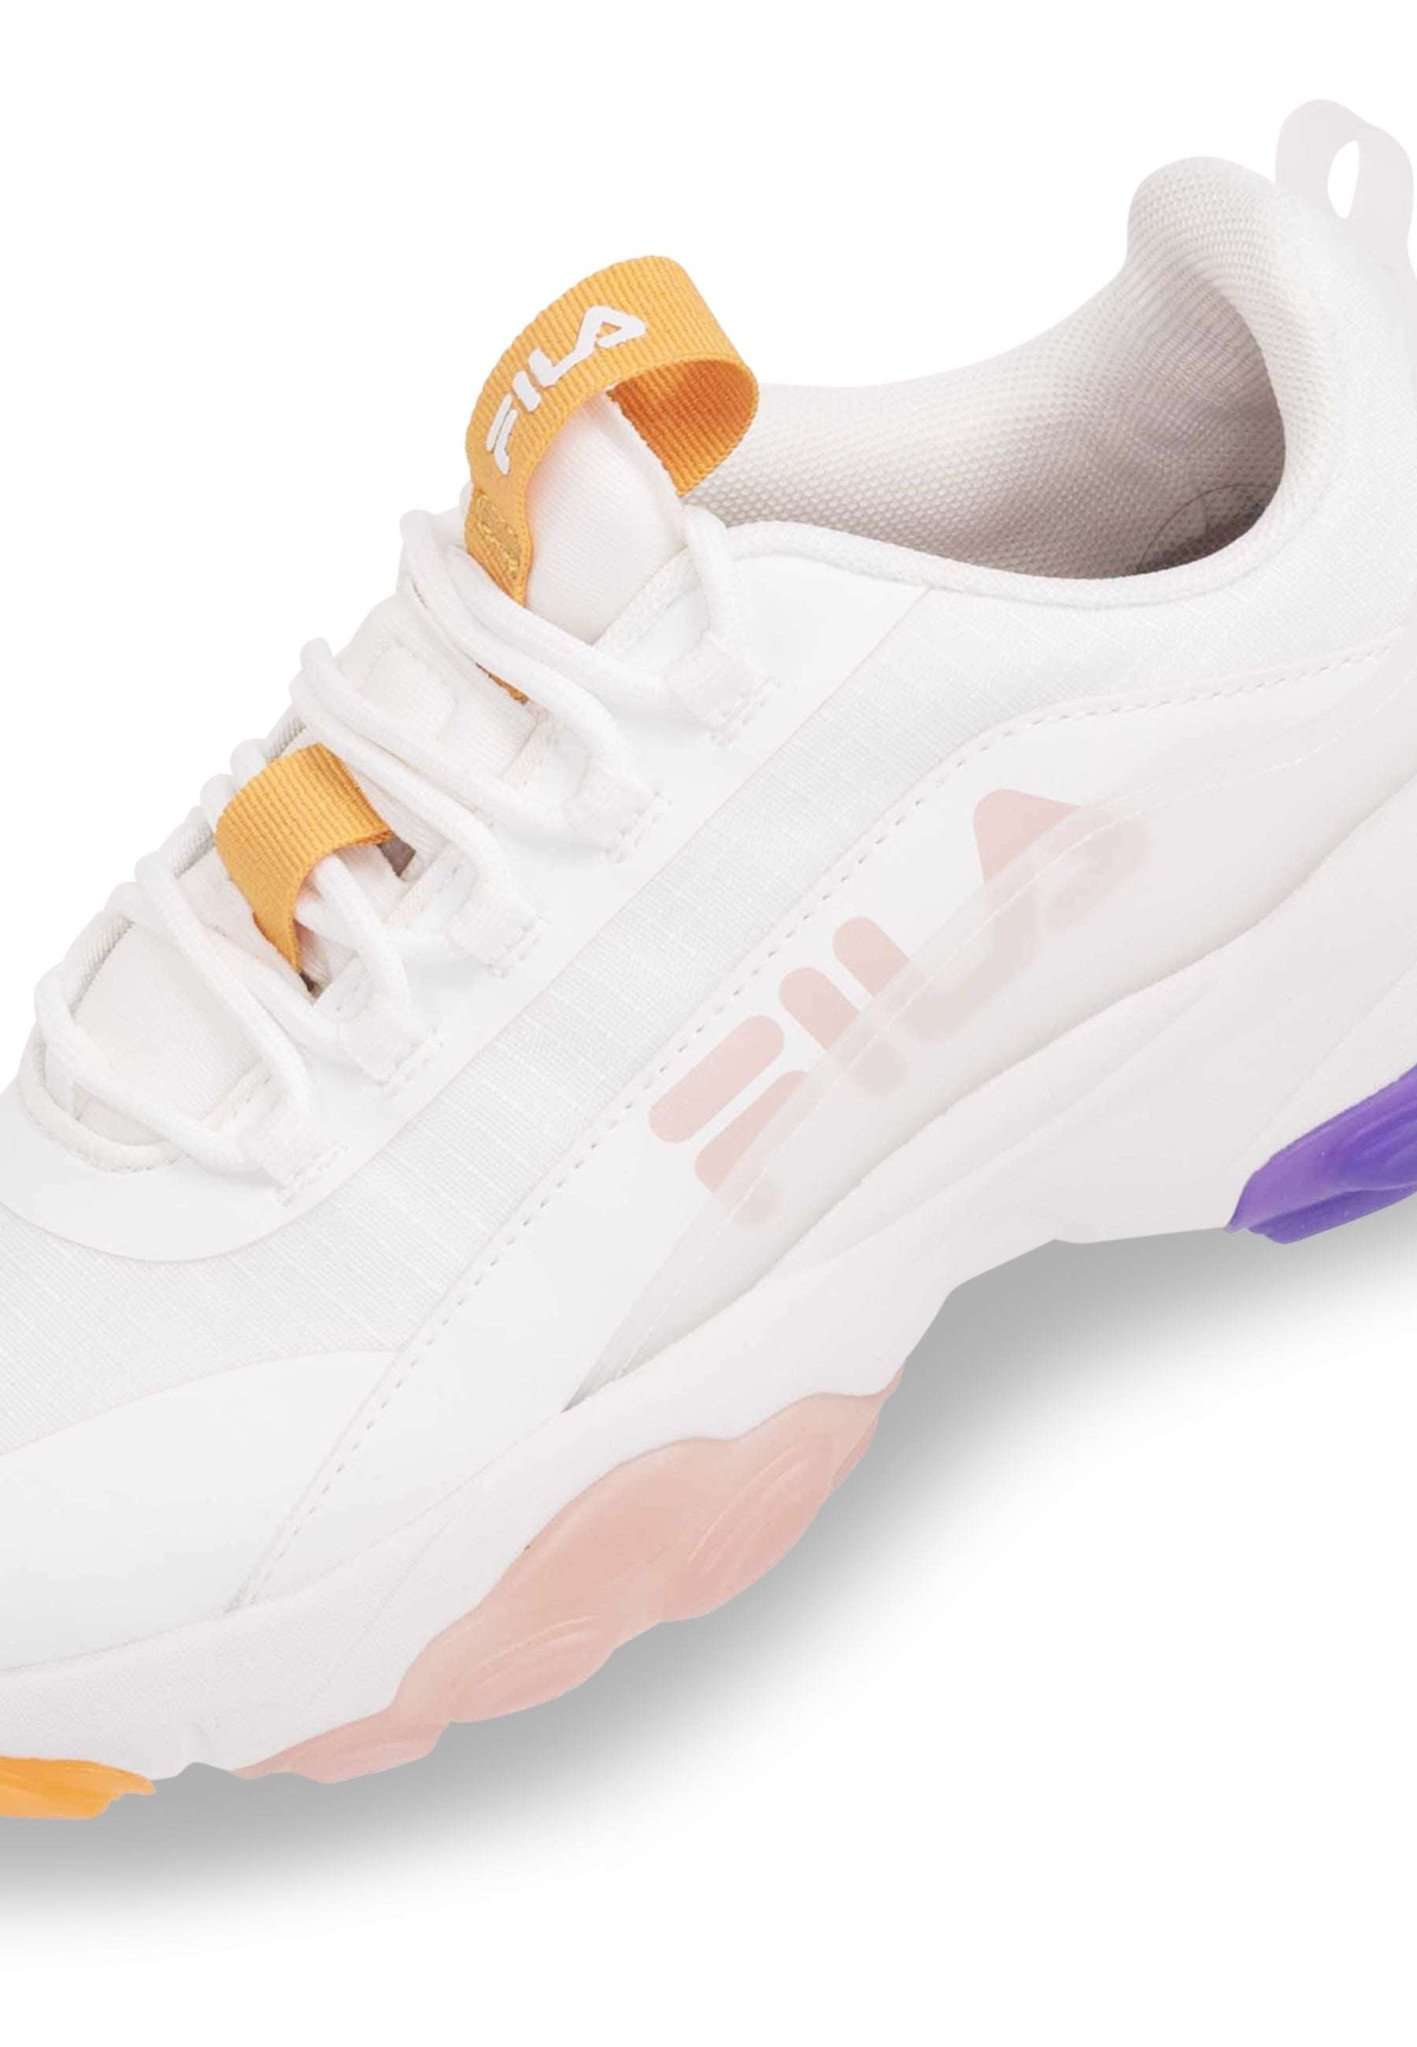 Fila Loligo Logo Wmn in White-Apricot Tan Sneakers Fila   